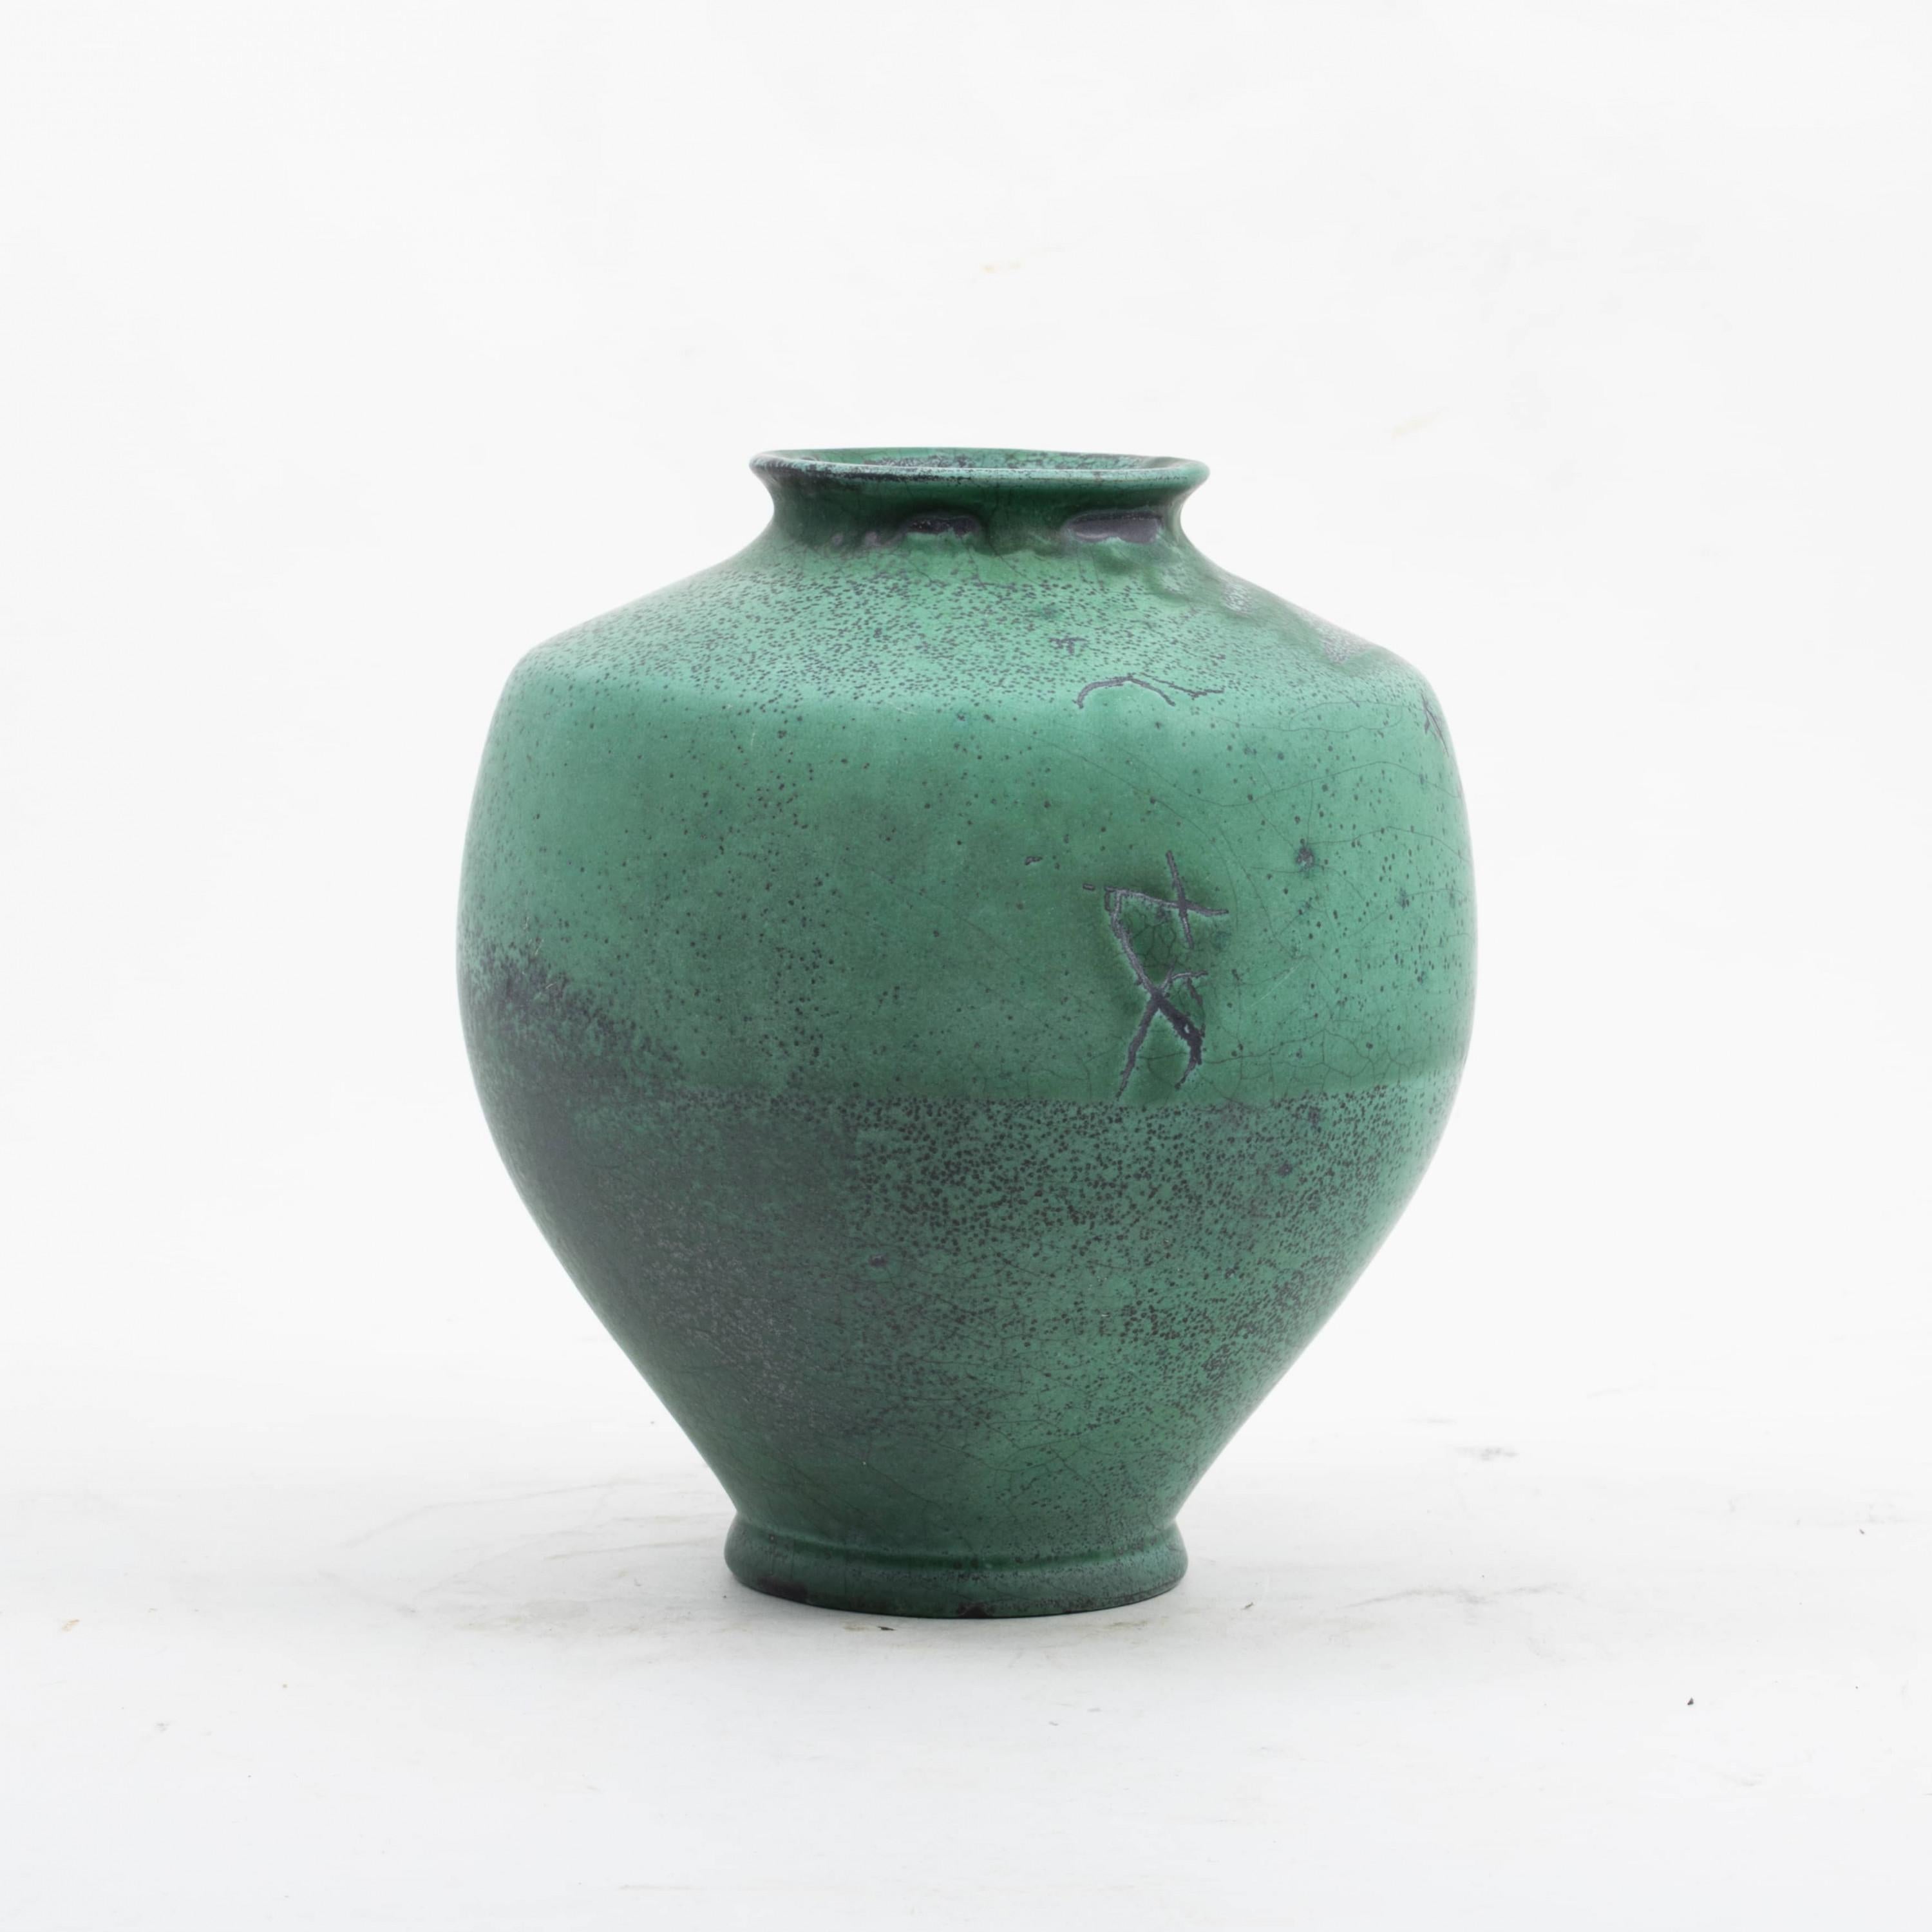 Kähler vase with beautiful turquoise green glaze.
Signed HAK
Denmark 1930-1940.